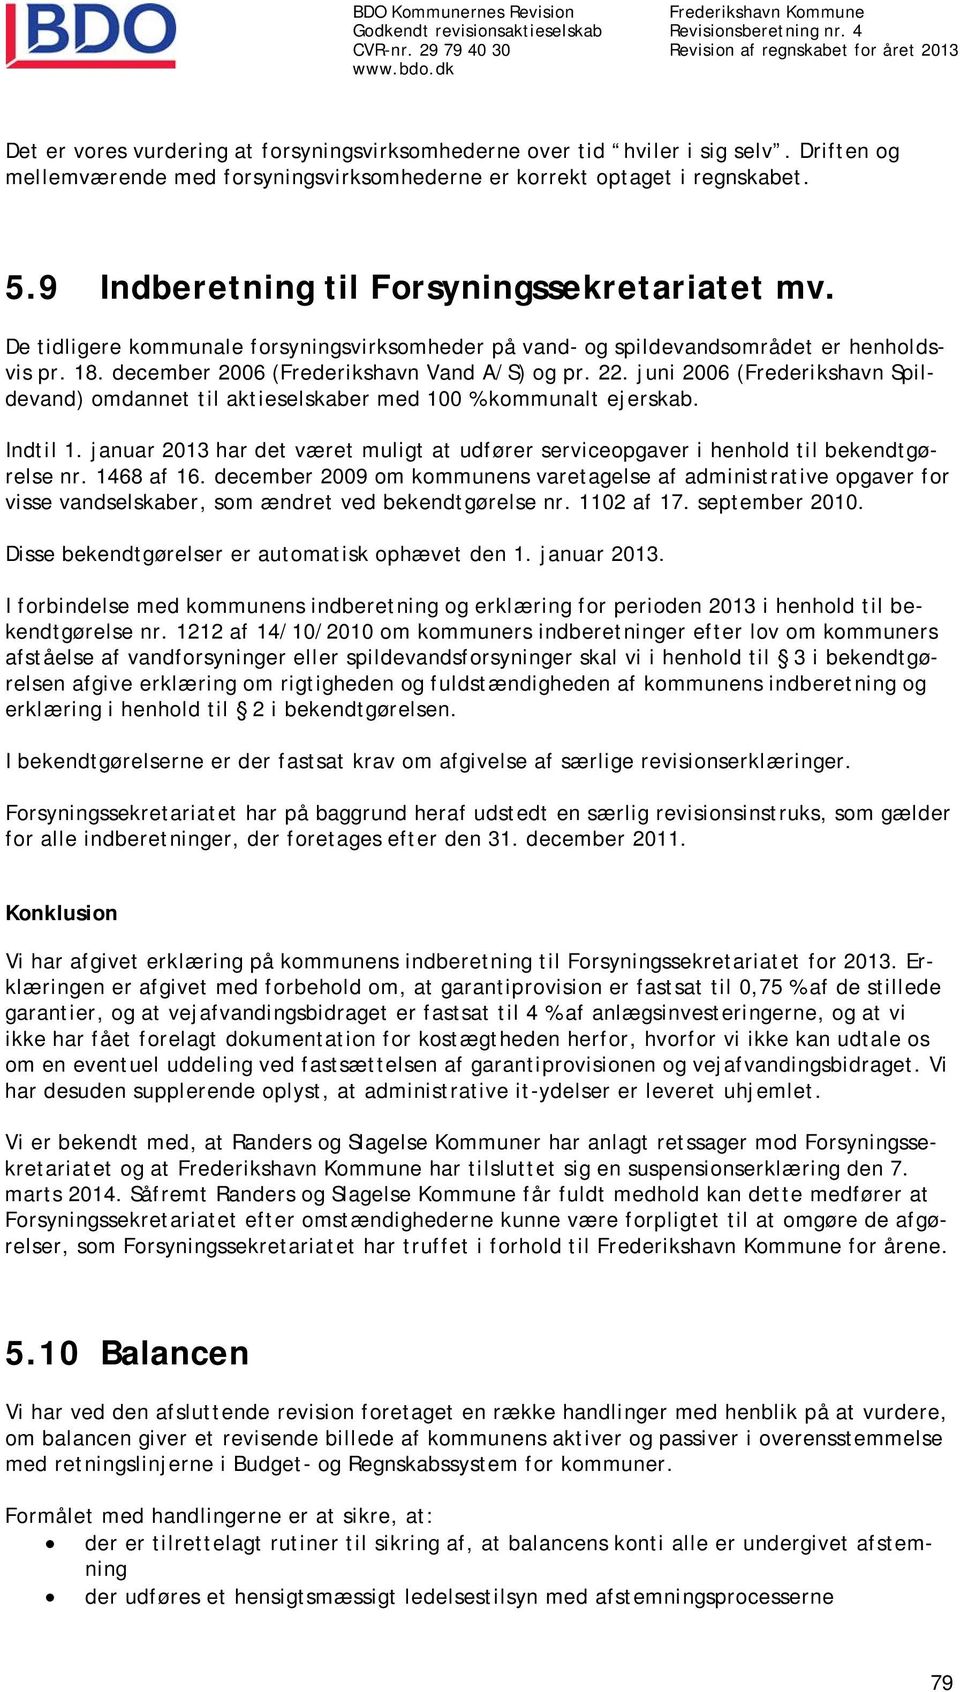 juni 2006 (Frederikshavn Spildevand) omdannet til aktieselskaber med 100 % kommunalt ejerskab. Indtil 1. januar 2013 har det været muligt at udfører serviceopgaver i henhold til bekendtgørelse nr.